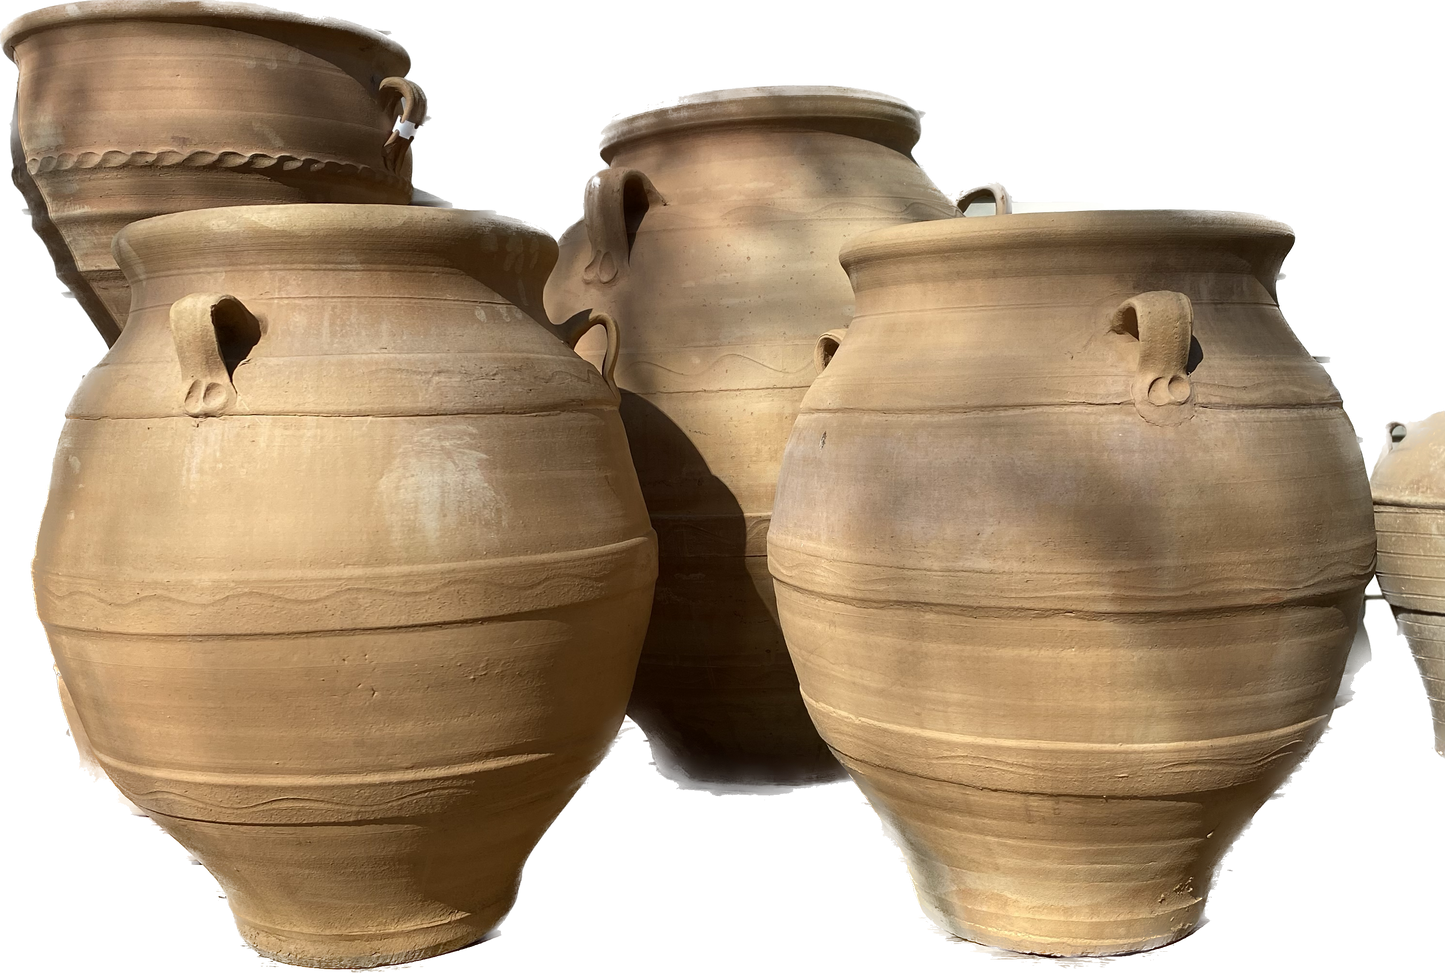 Festos Oil Jar - Cretan Planter